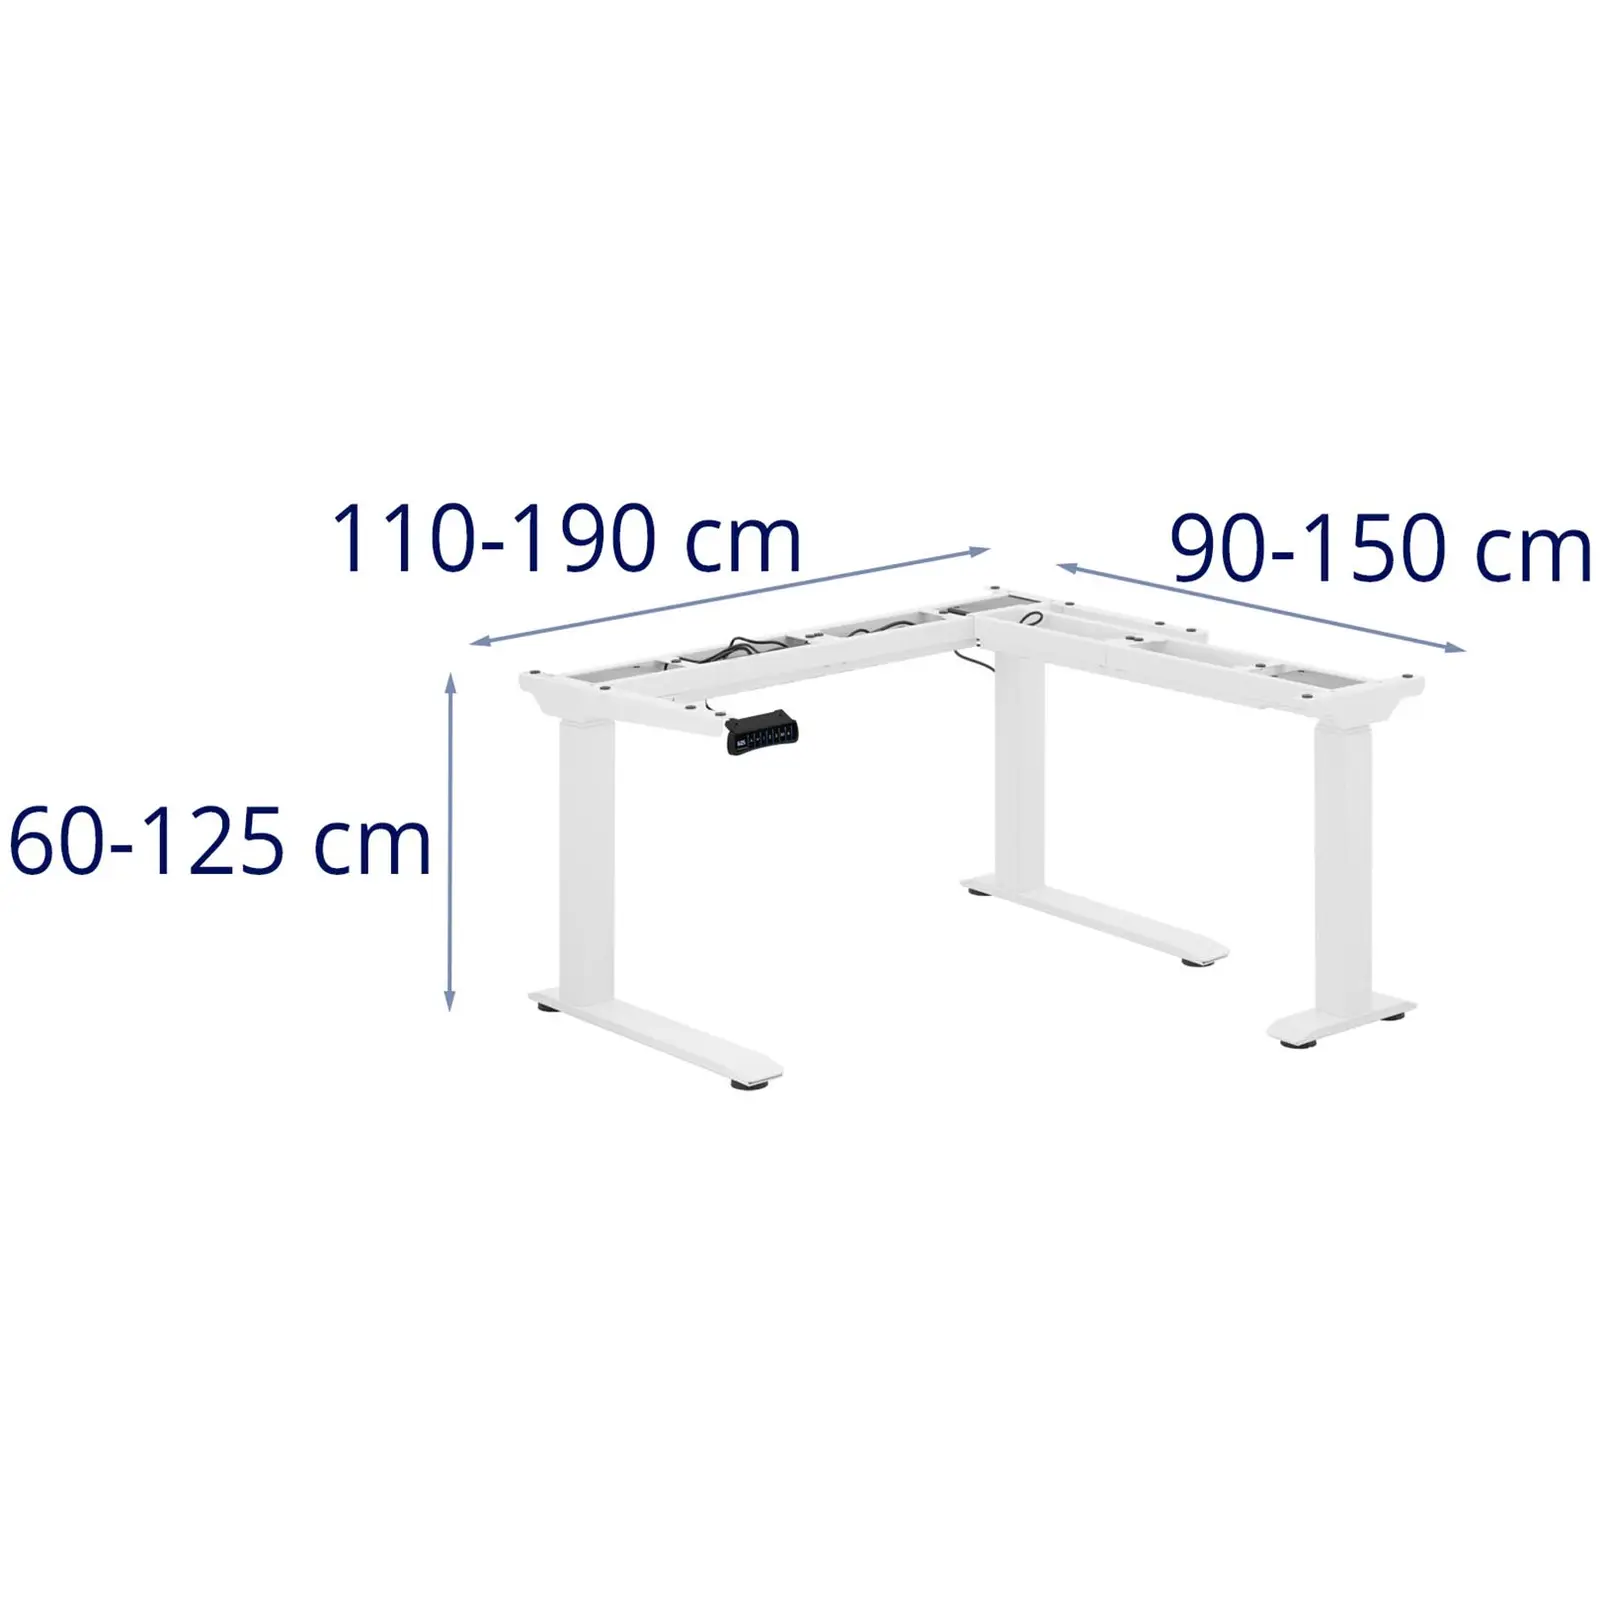 Brugt Hæve-sænke-stel til hjørnebord - højde: 60 til 125 cm - bredde: 110 til 190 cm og 90 til 150 cm